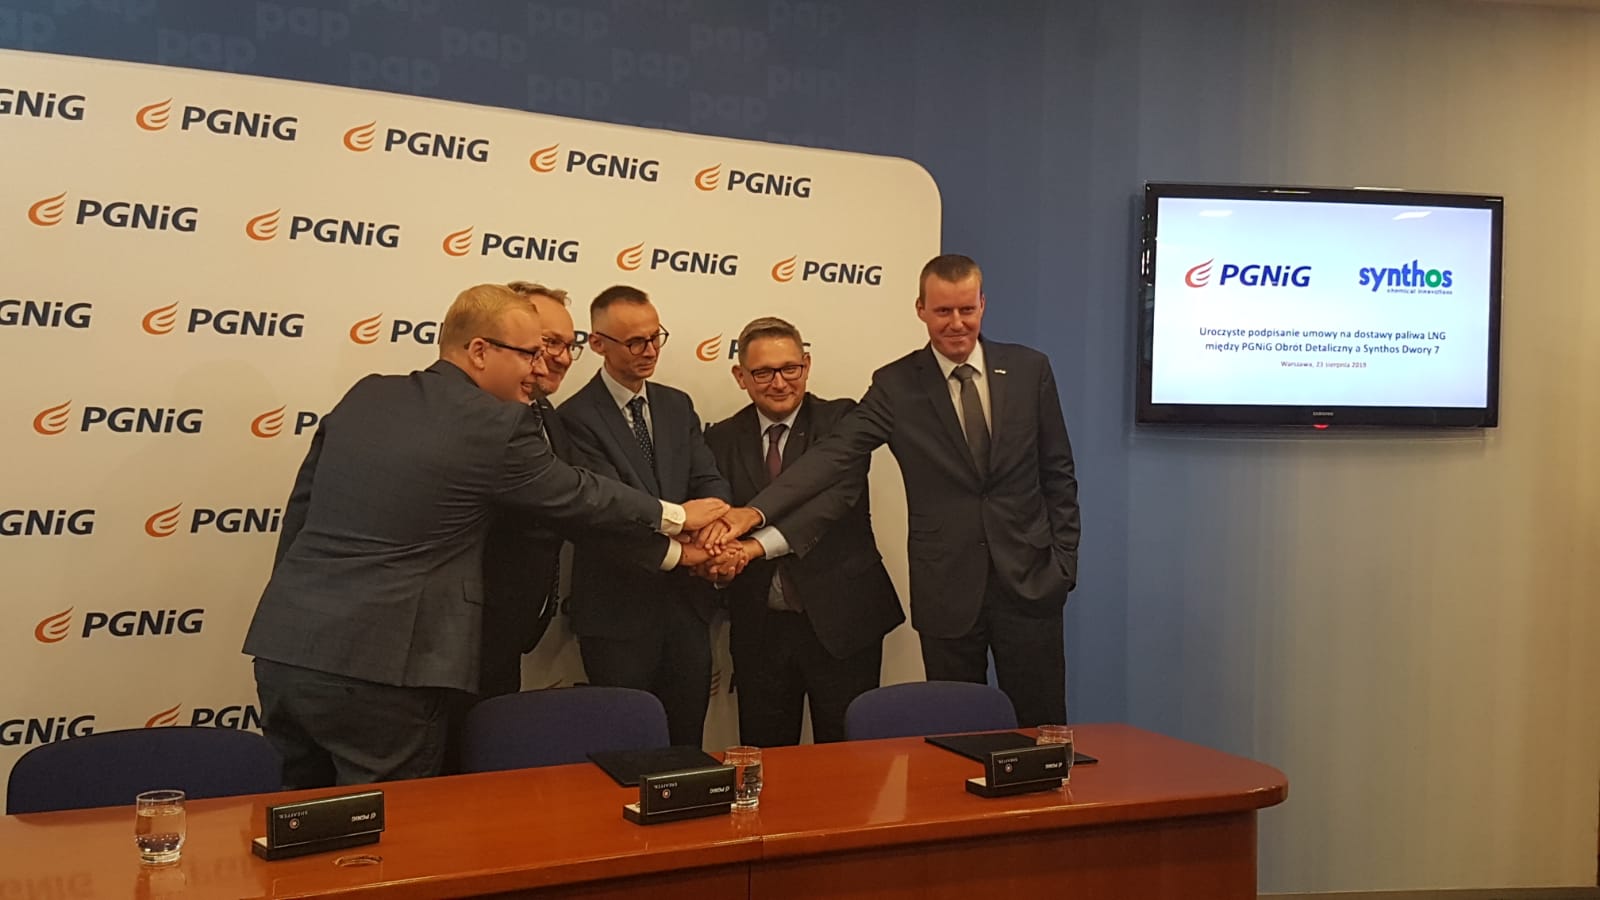 Podpisanie umowy PGNiG OD oraz Synthos fot. Piotr Stępiński/BiznesAlert.pl